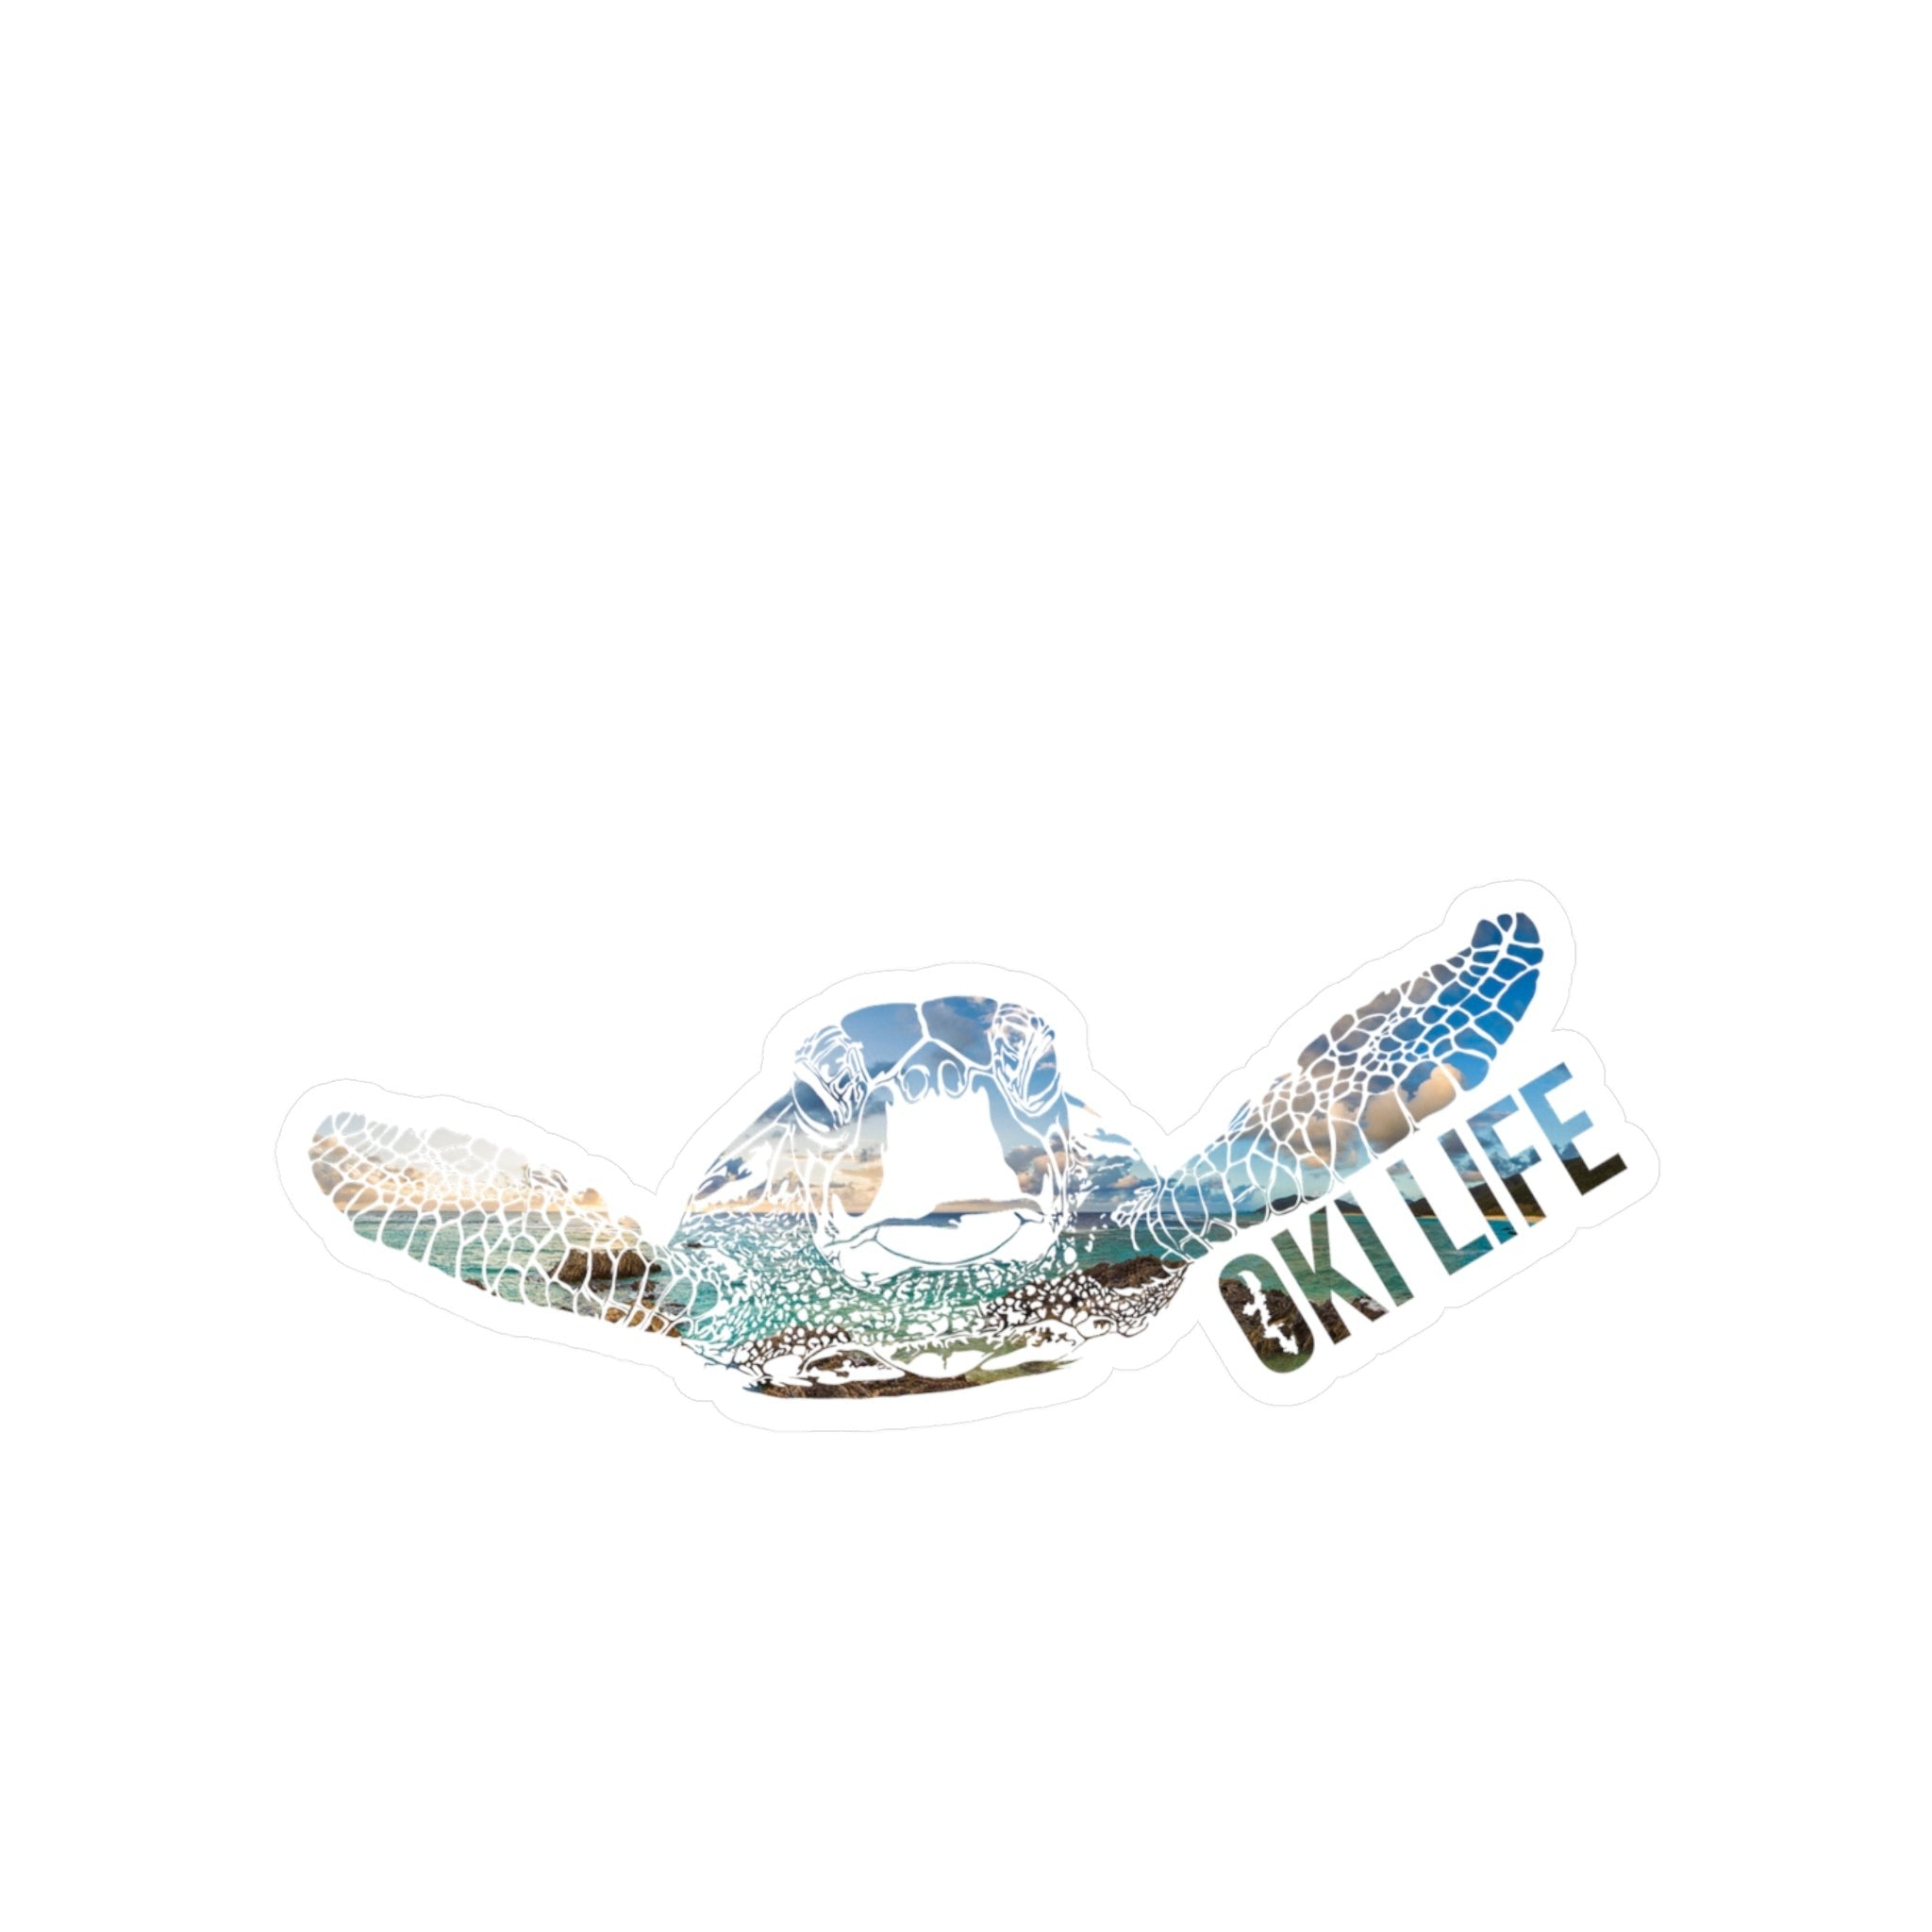 OkiLife Turtle Logo Decal 6" - OkiLife